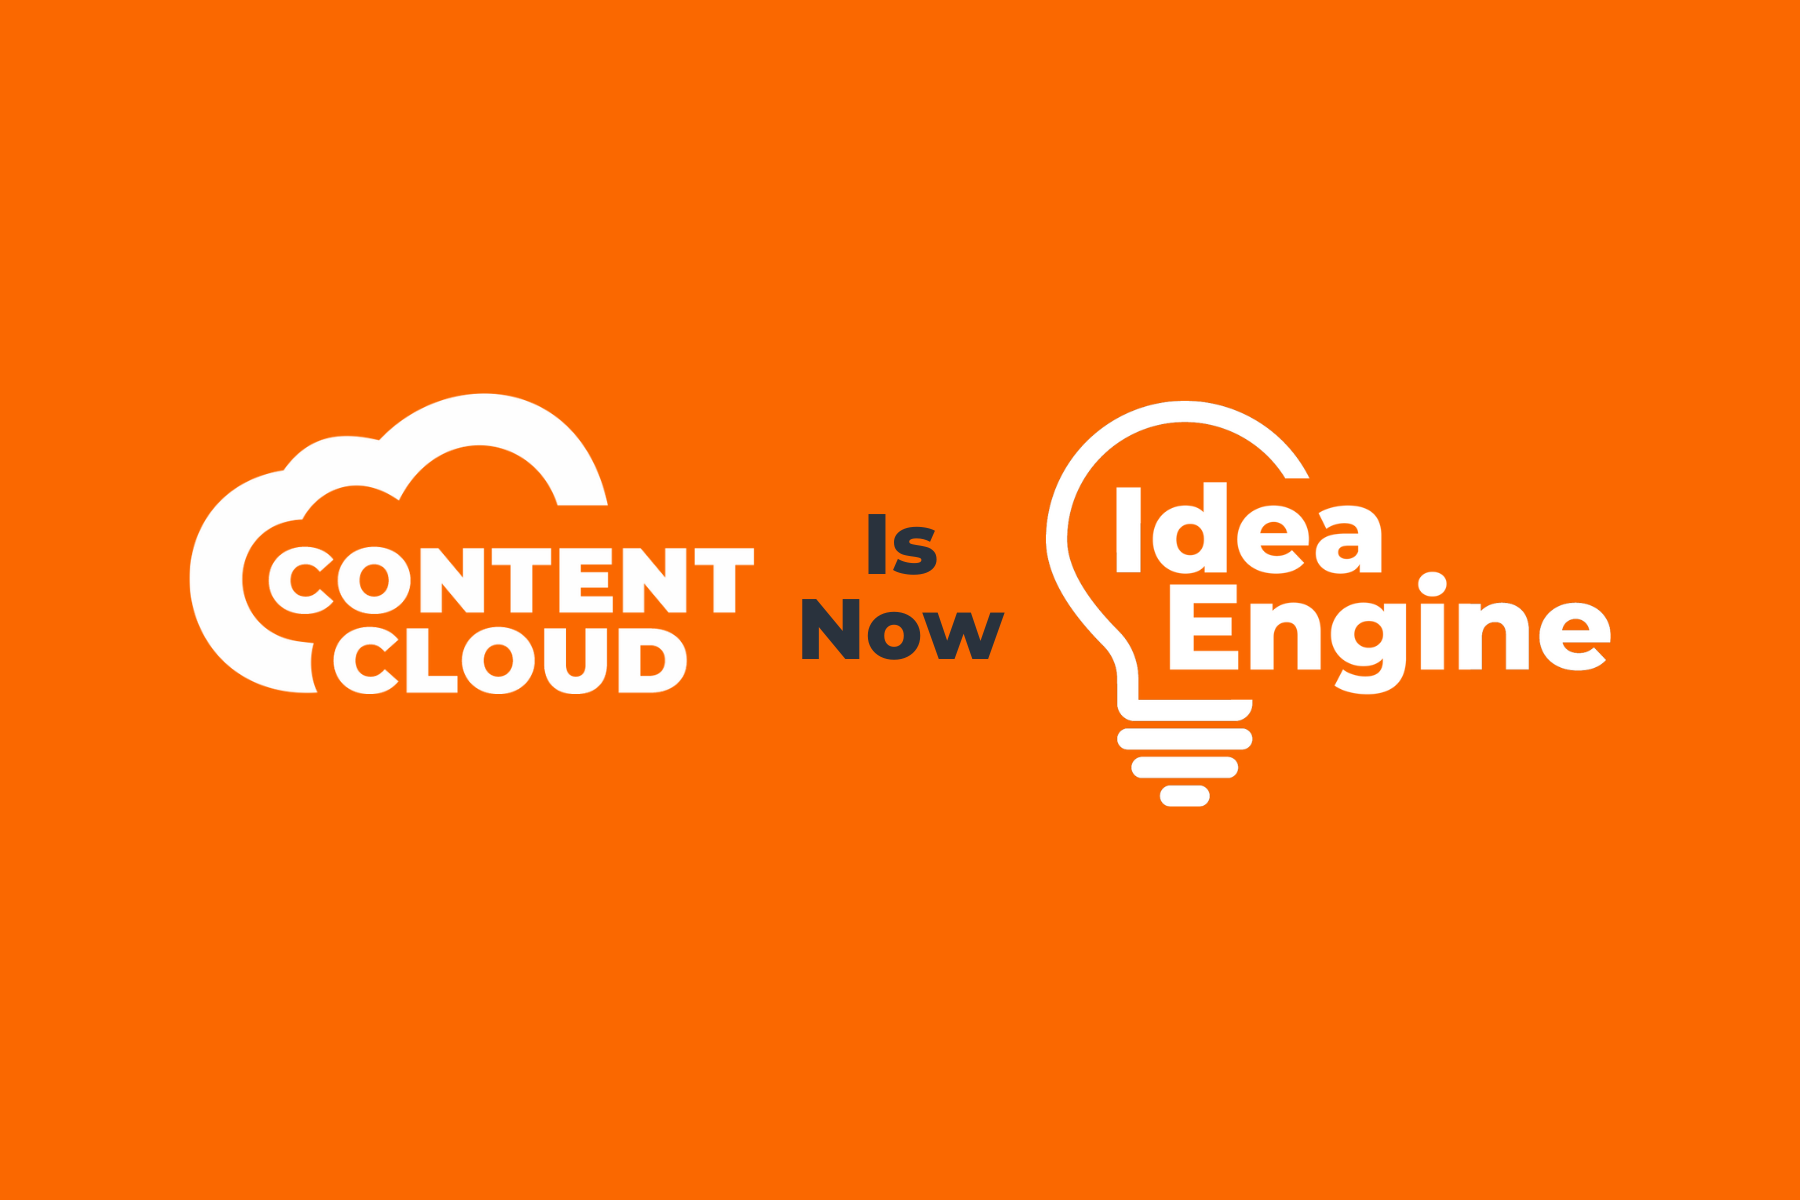 Content Cloud is now Idea Engine